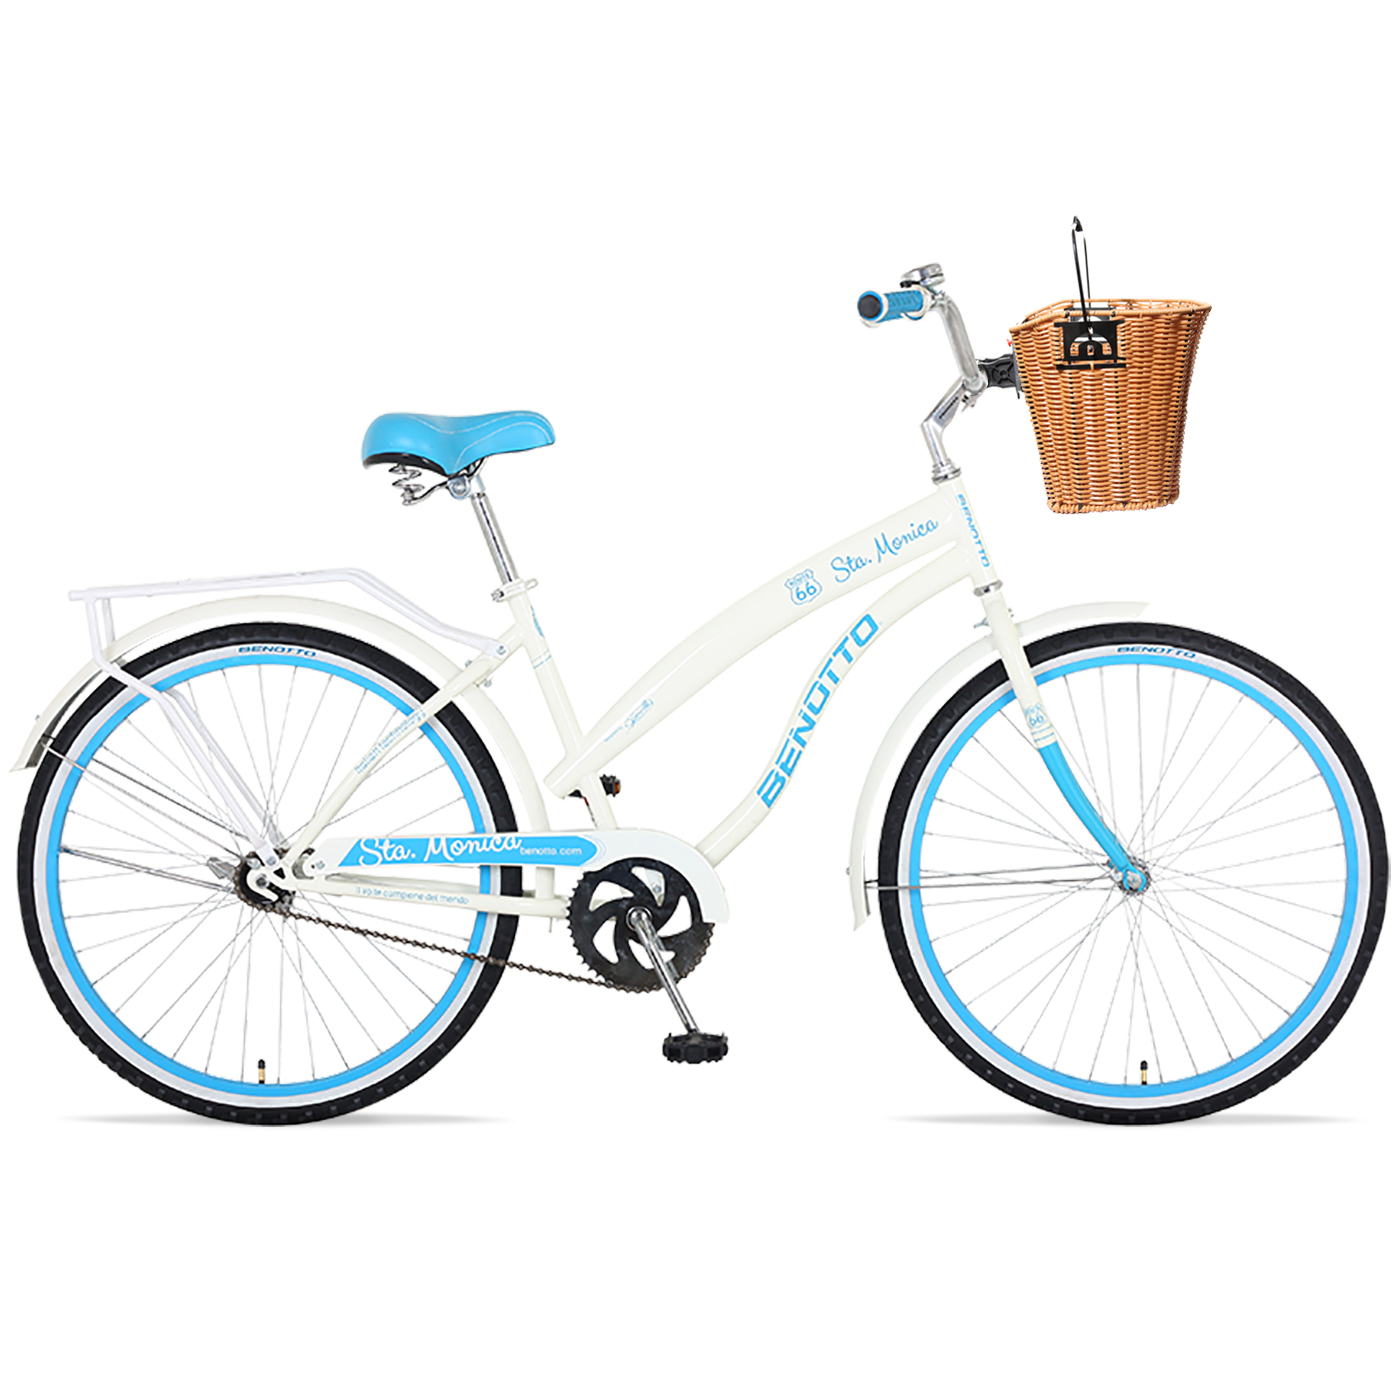 Bicicleta BENOTTO City STA. MONICA R26 1V. Mujer Frenos Contrapedal con Canastilla Acero Blanco Talla:UN